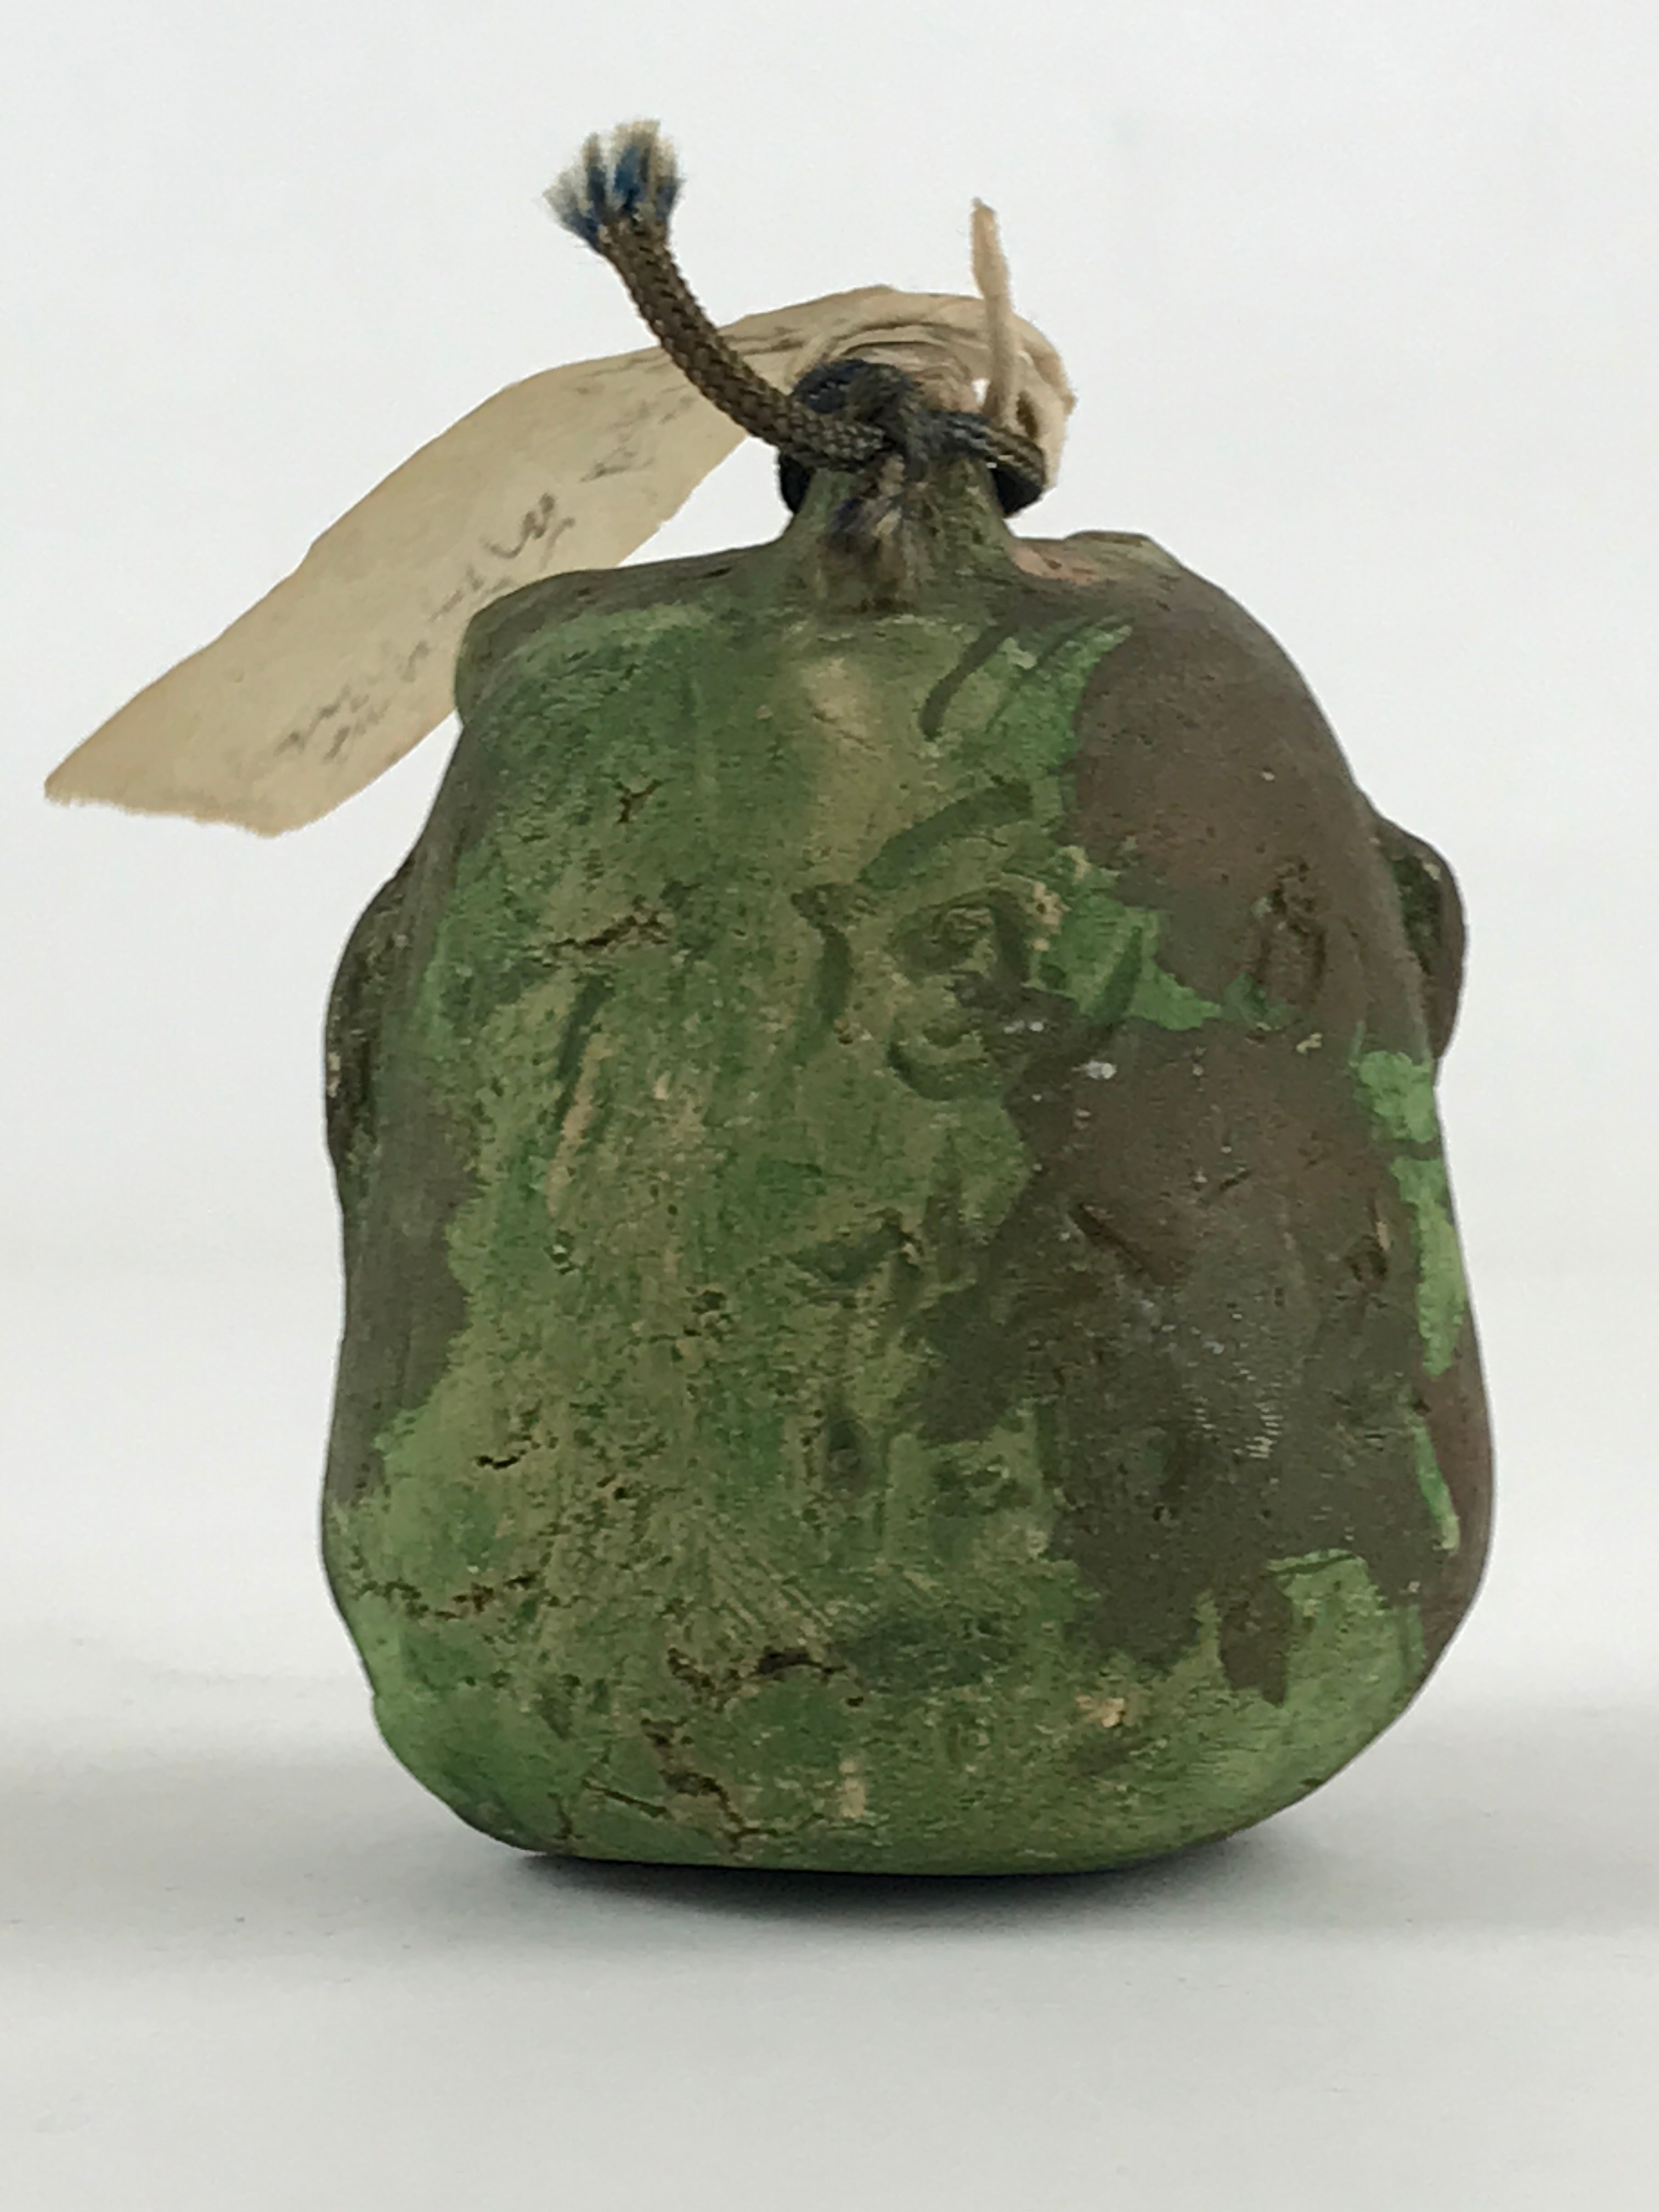 Japanese Clay Bell Dorei Tsuchi-Suzu Uramen Devil Mask Vtg Green Amulet DR474